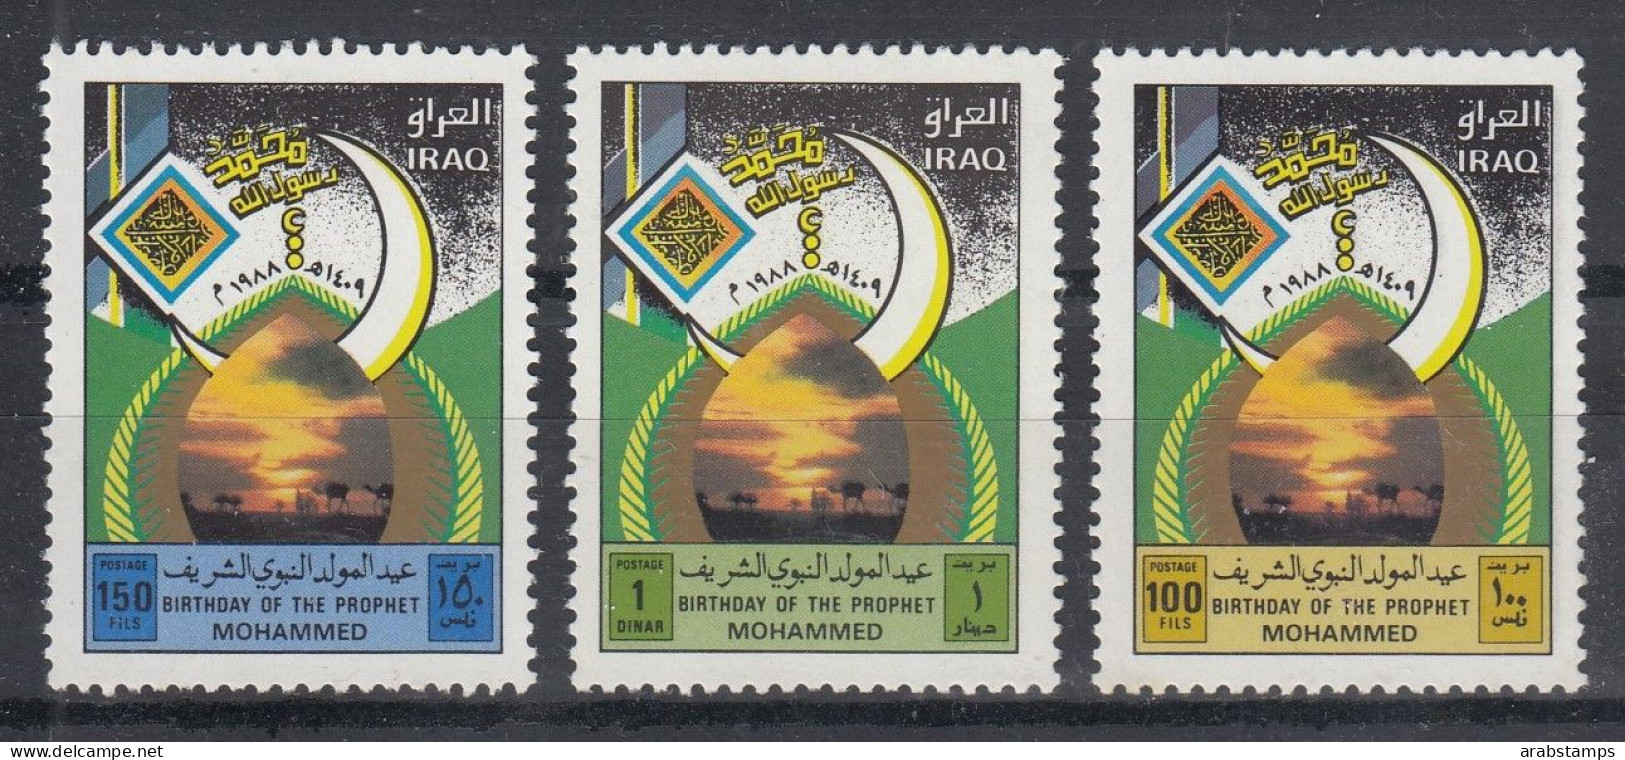 1988 IRAQ Complete Set 3 Values MNH S.G.No.1848-1850 - Iraq